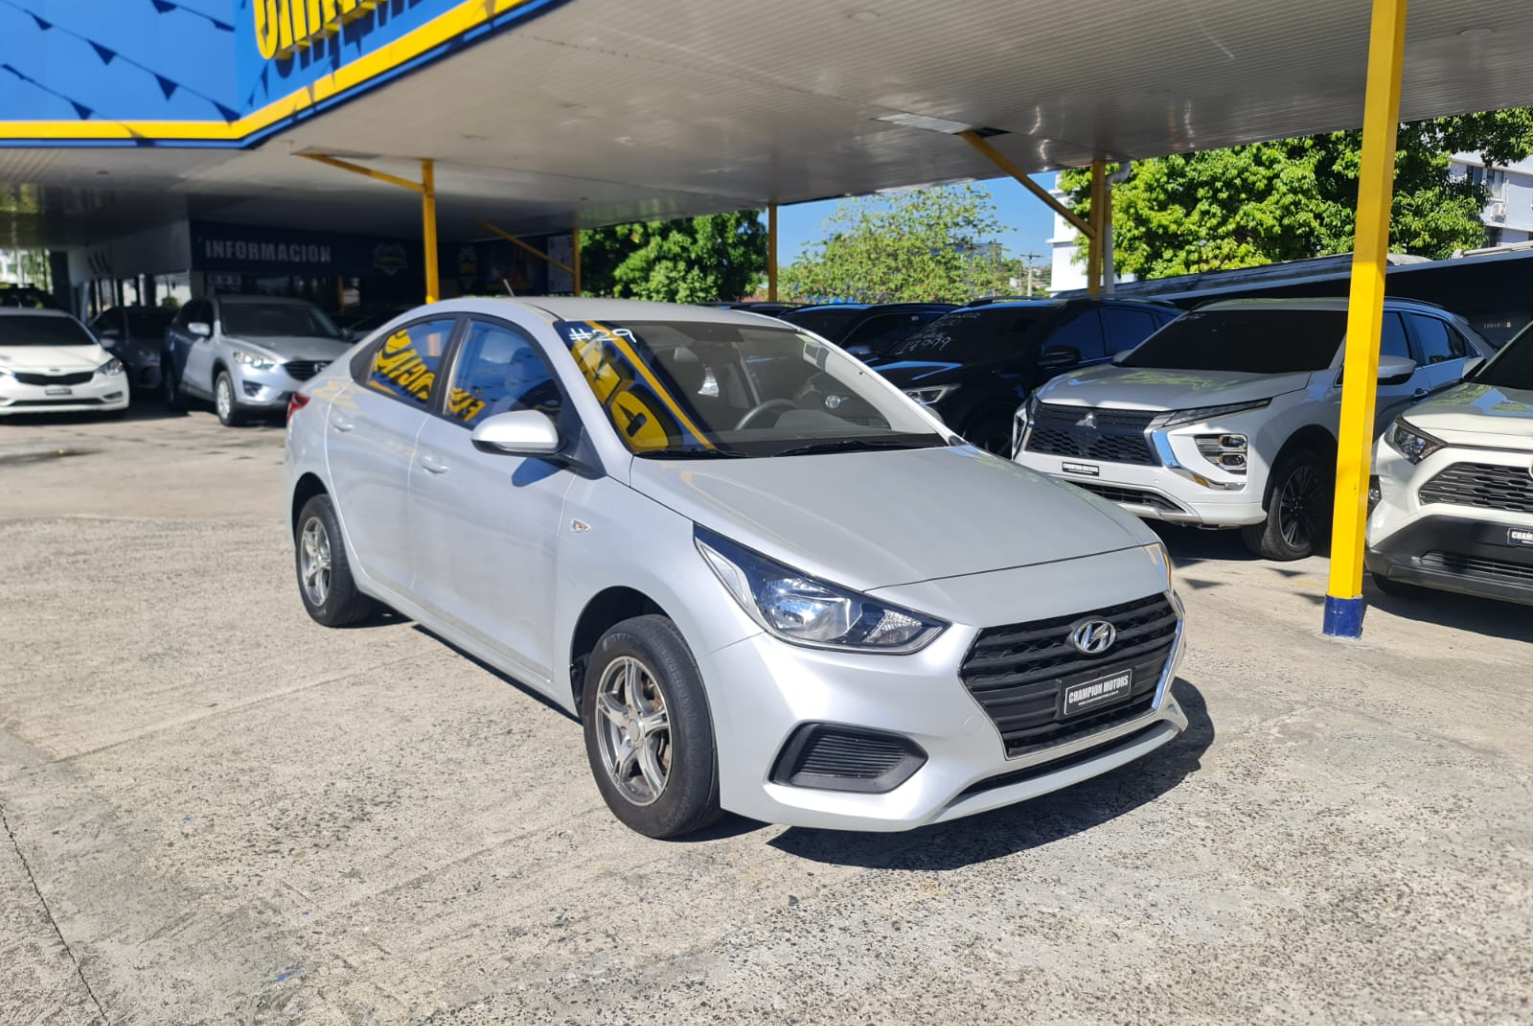 Hyundai Accent 2018 Automático color Plateado, Imagen #3